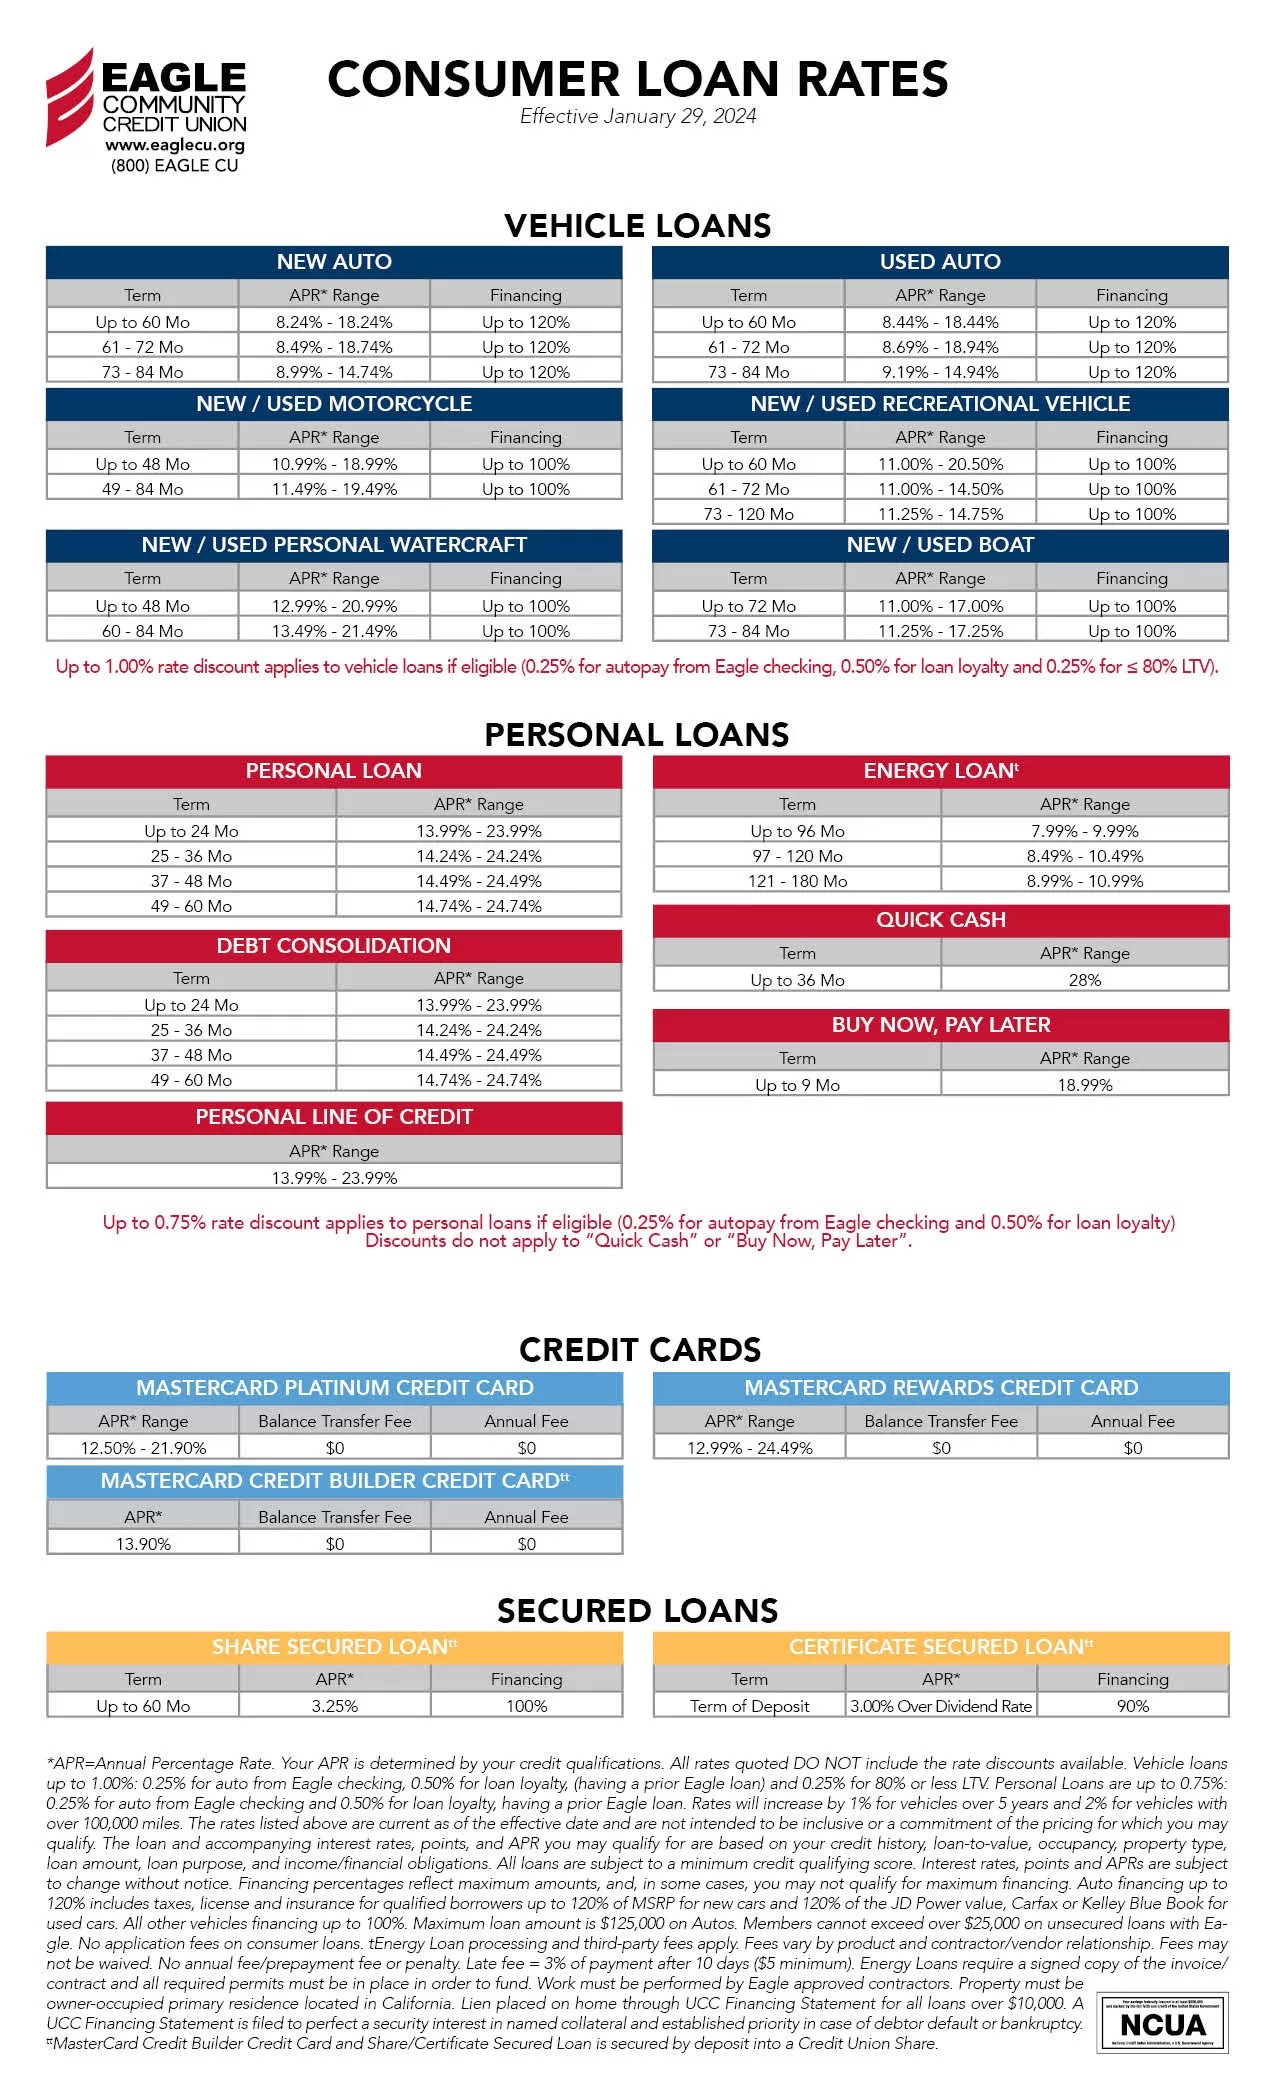 Eagle CU Consumer Loan Rates